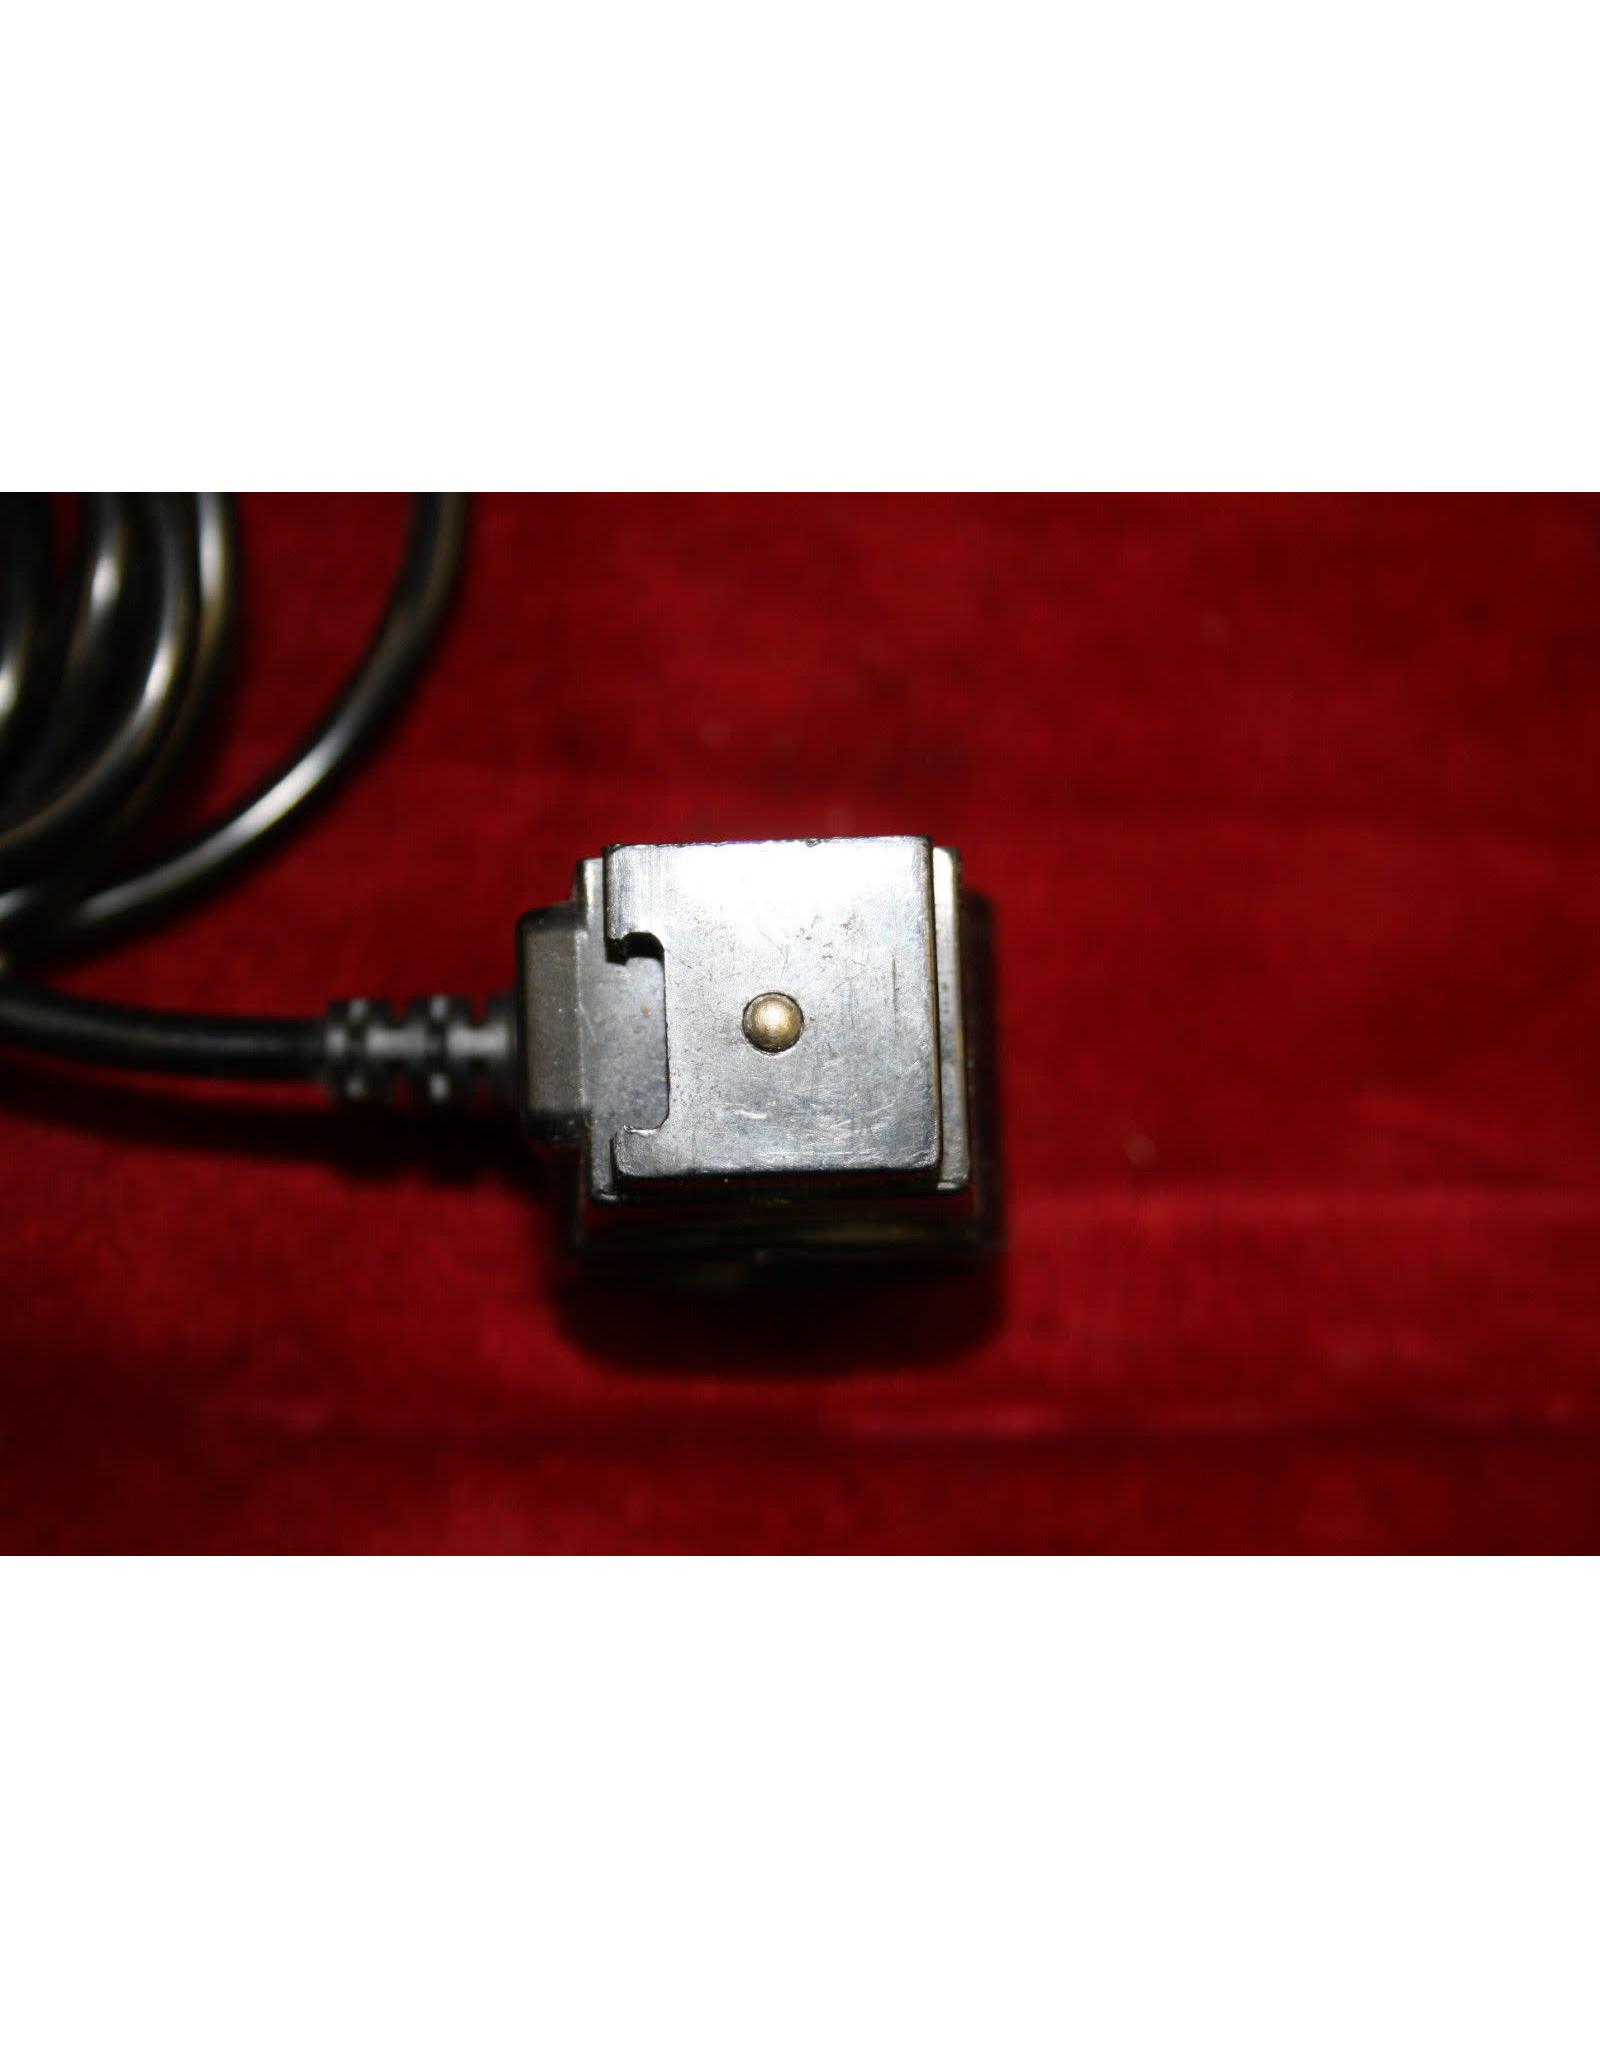 Vivitar SC-3 Sensor Adapter Cord for Model 283 (Pre-owned)